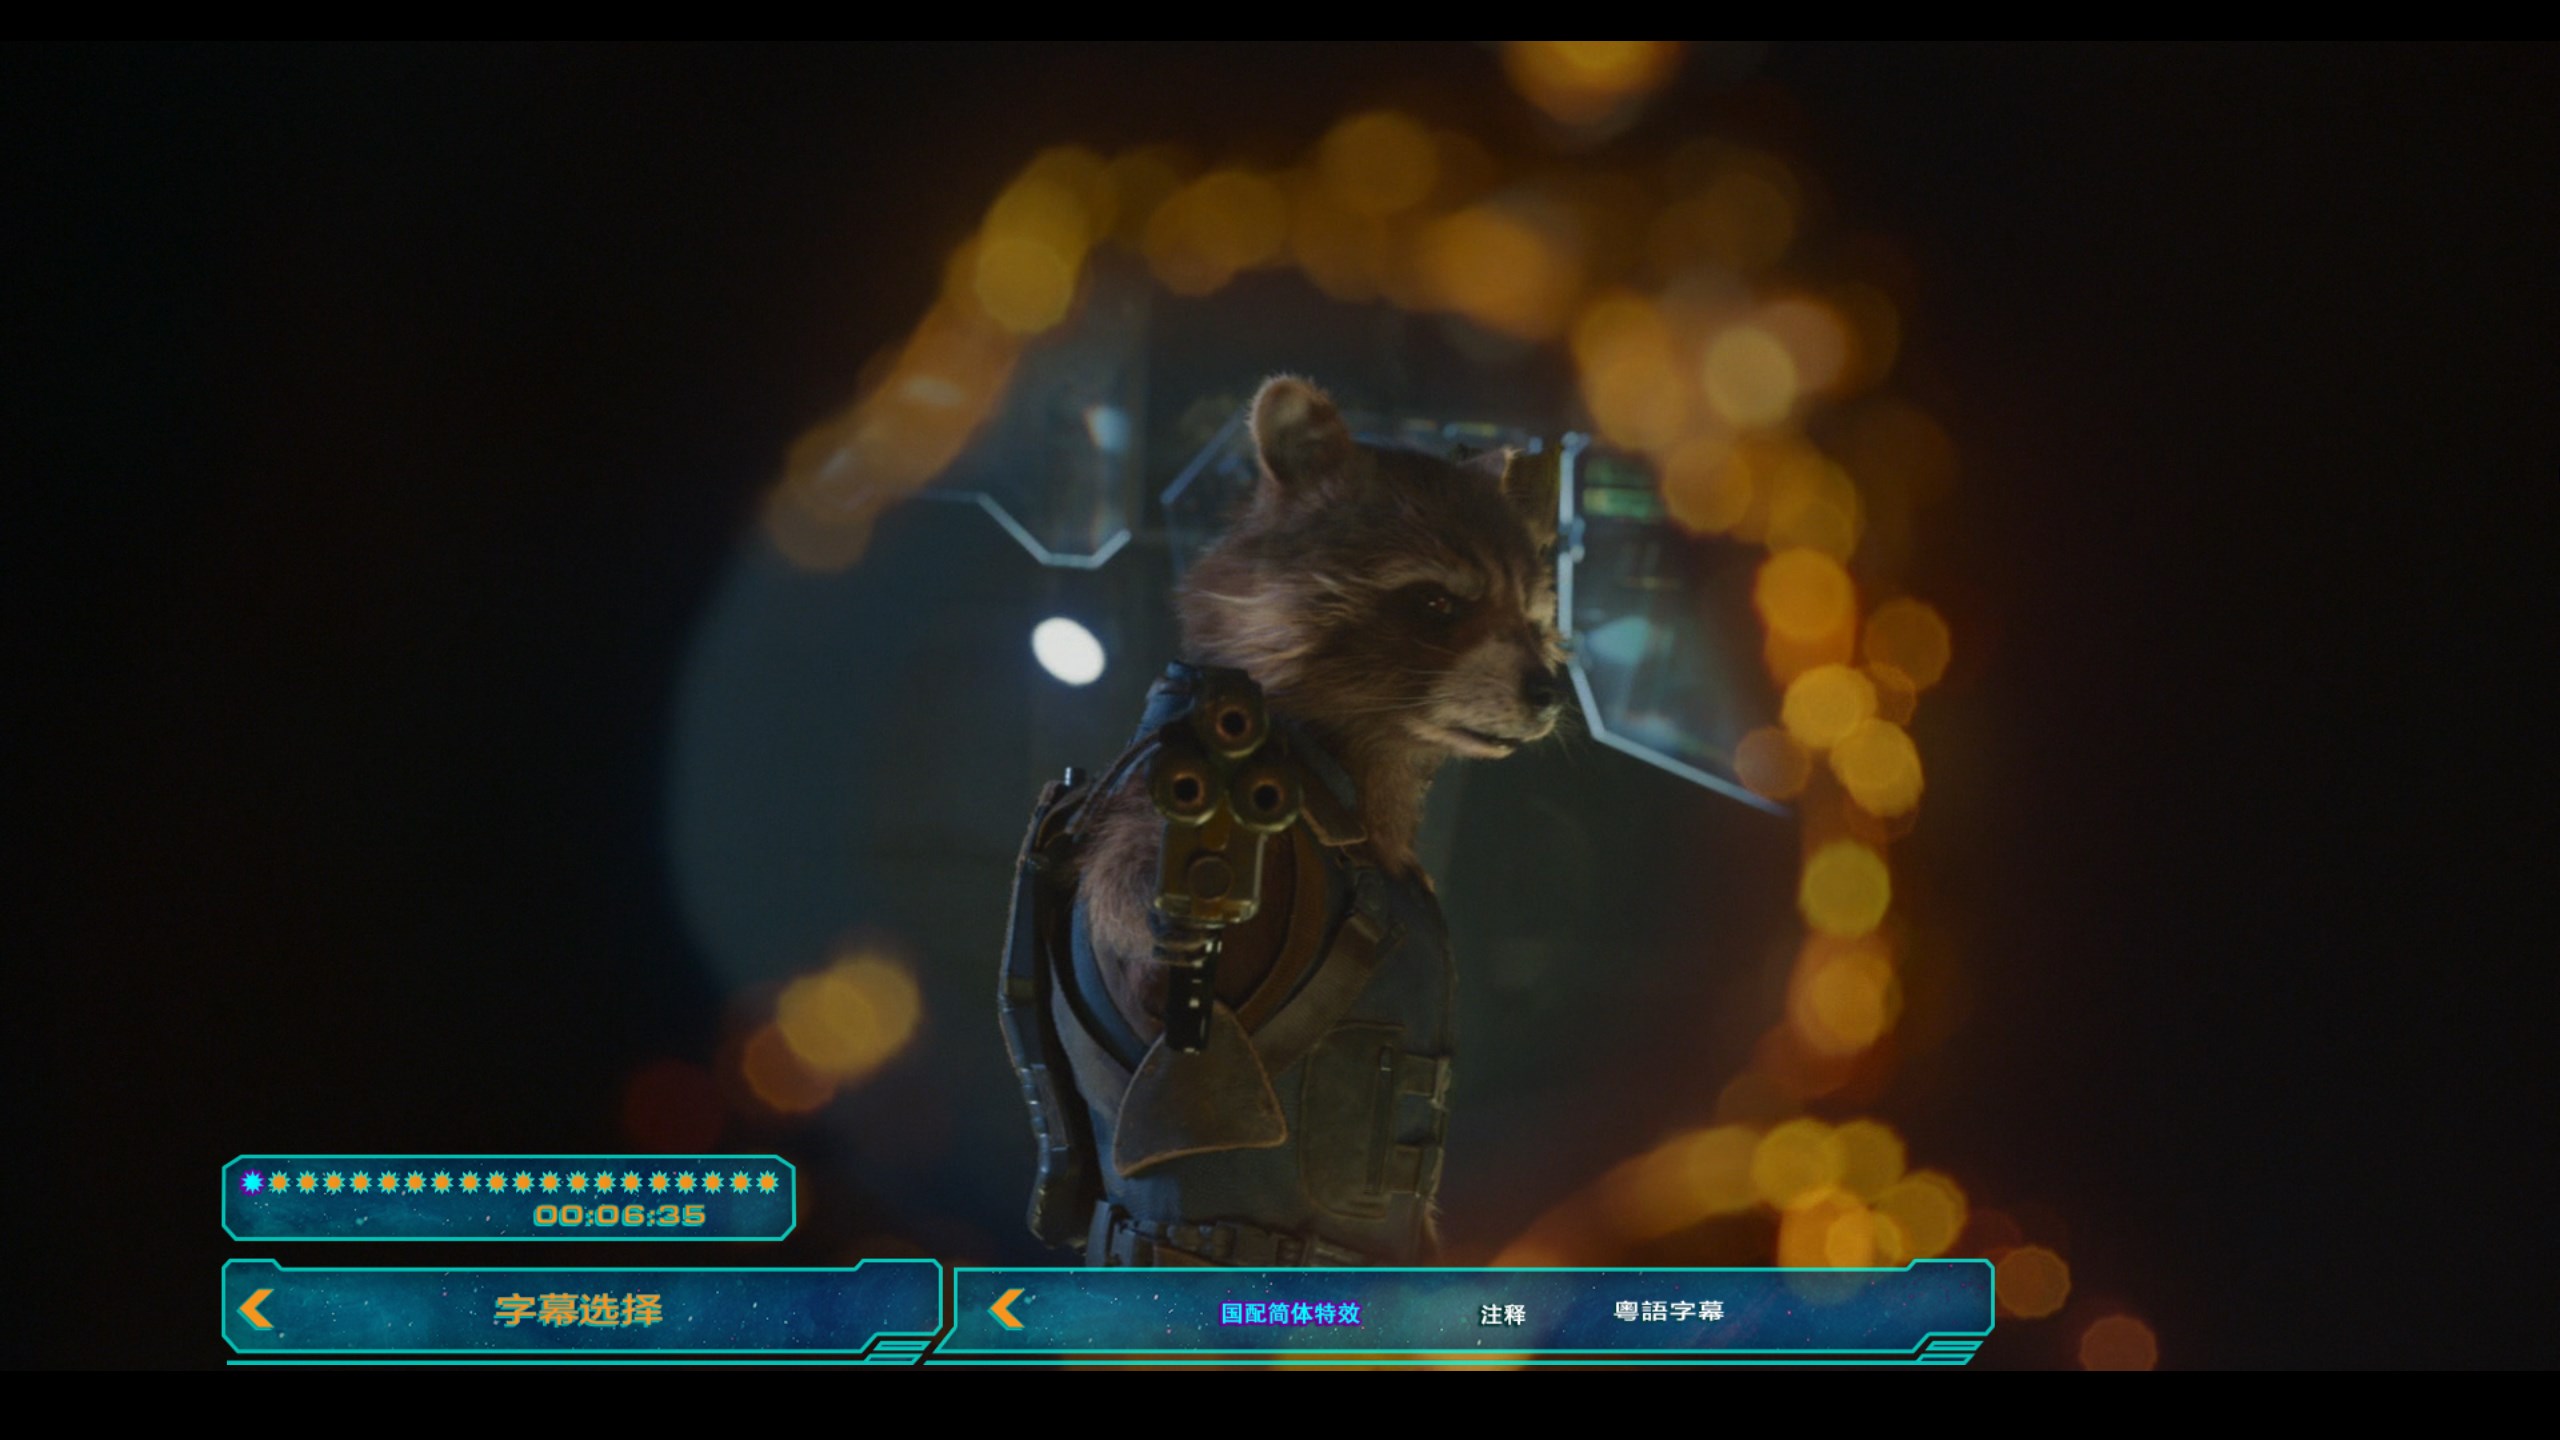 银河护卫队2【IMAX版3D原盘国语中字 DIY次世代国语/国配/双语/注释特效字幕】 Guardians of the Galaxy Vol 2 2017 1080p 3D IMAX Blu-ray DTS-HD MA 7.1-FiNalHD@HDSky [43.71 GB]-4.jpg